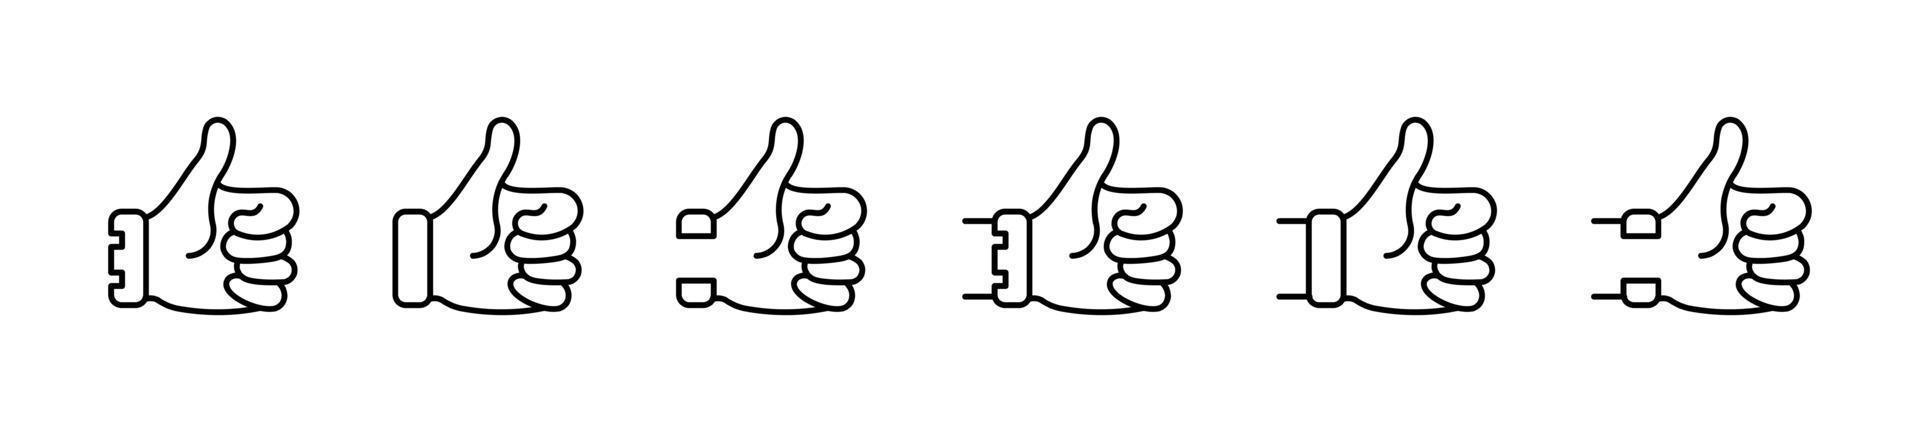 jeu d'icônes de pouce vers le haut, comme signe, comme symbole, signe de symbole de doigt vers le haut isolé sur fond blanc - illustration vectorielle vecteur